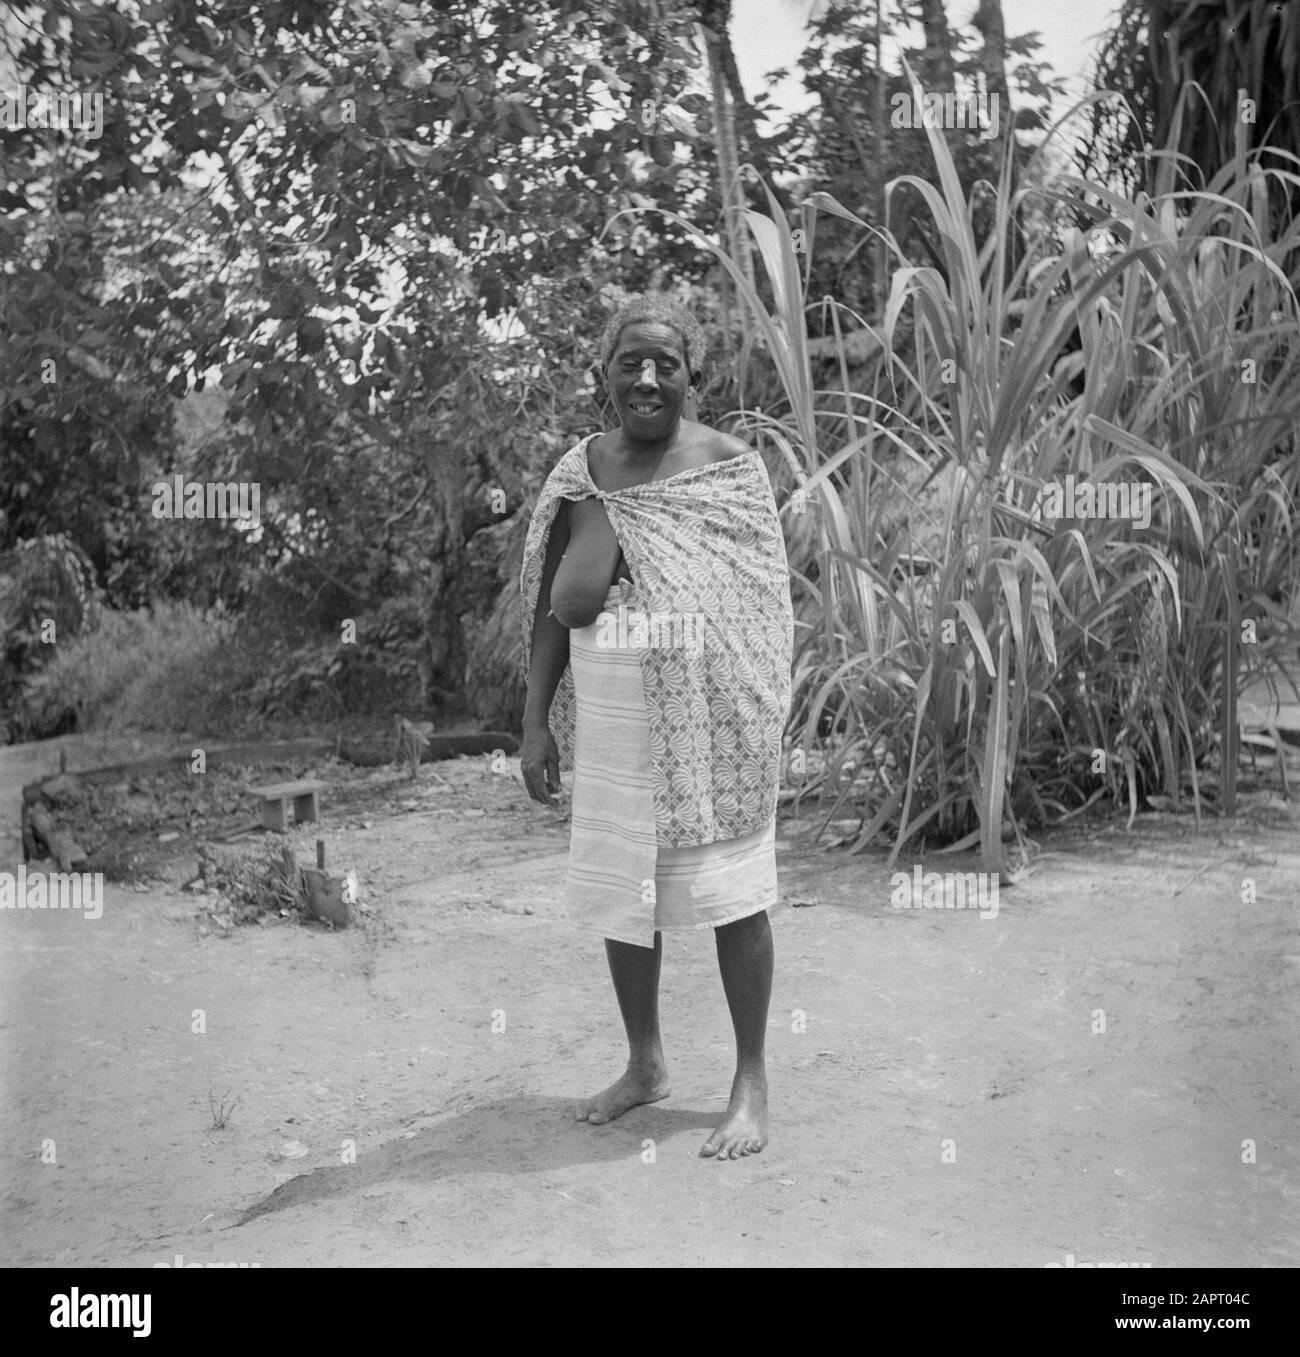 Viaggio in Suriname e Antille Olandesi una vecchia creola donna a Langetabbetje in Suriname Data: 1947 luogo: Langatabbetje, Marowijne, Suriname Parole Chiave: Foresta di lana, anziani, donne Foto Stock